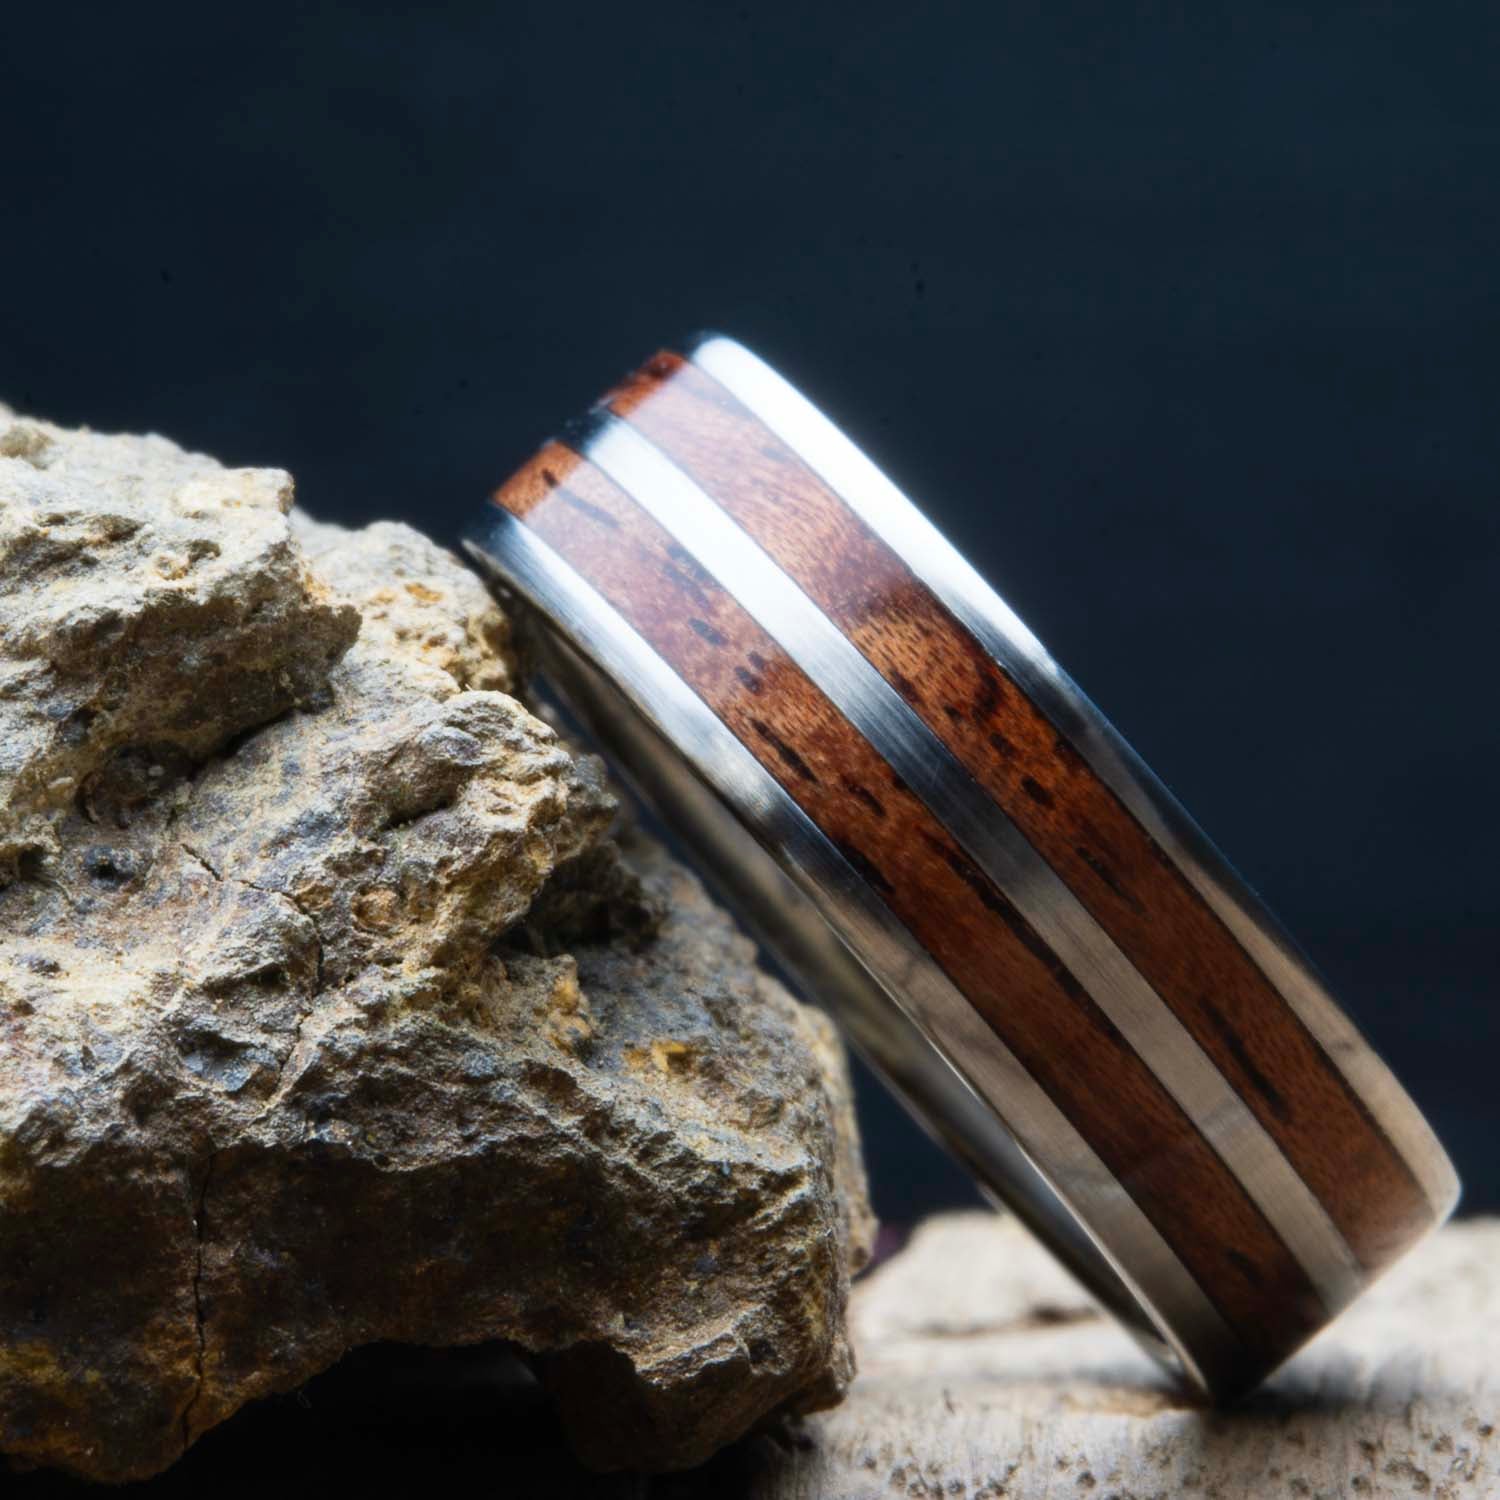 Bubinga wood double inlay ring